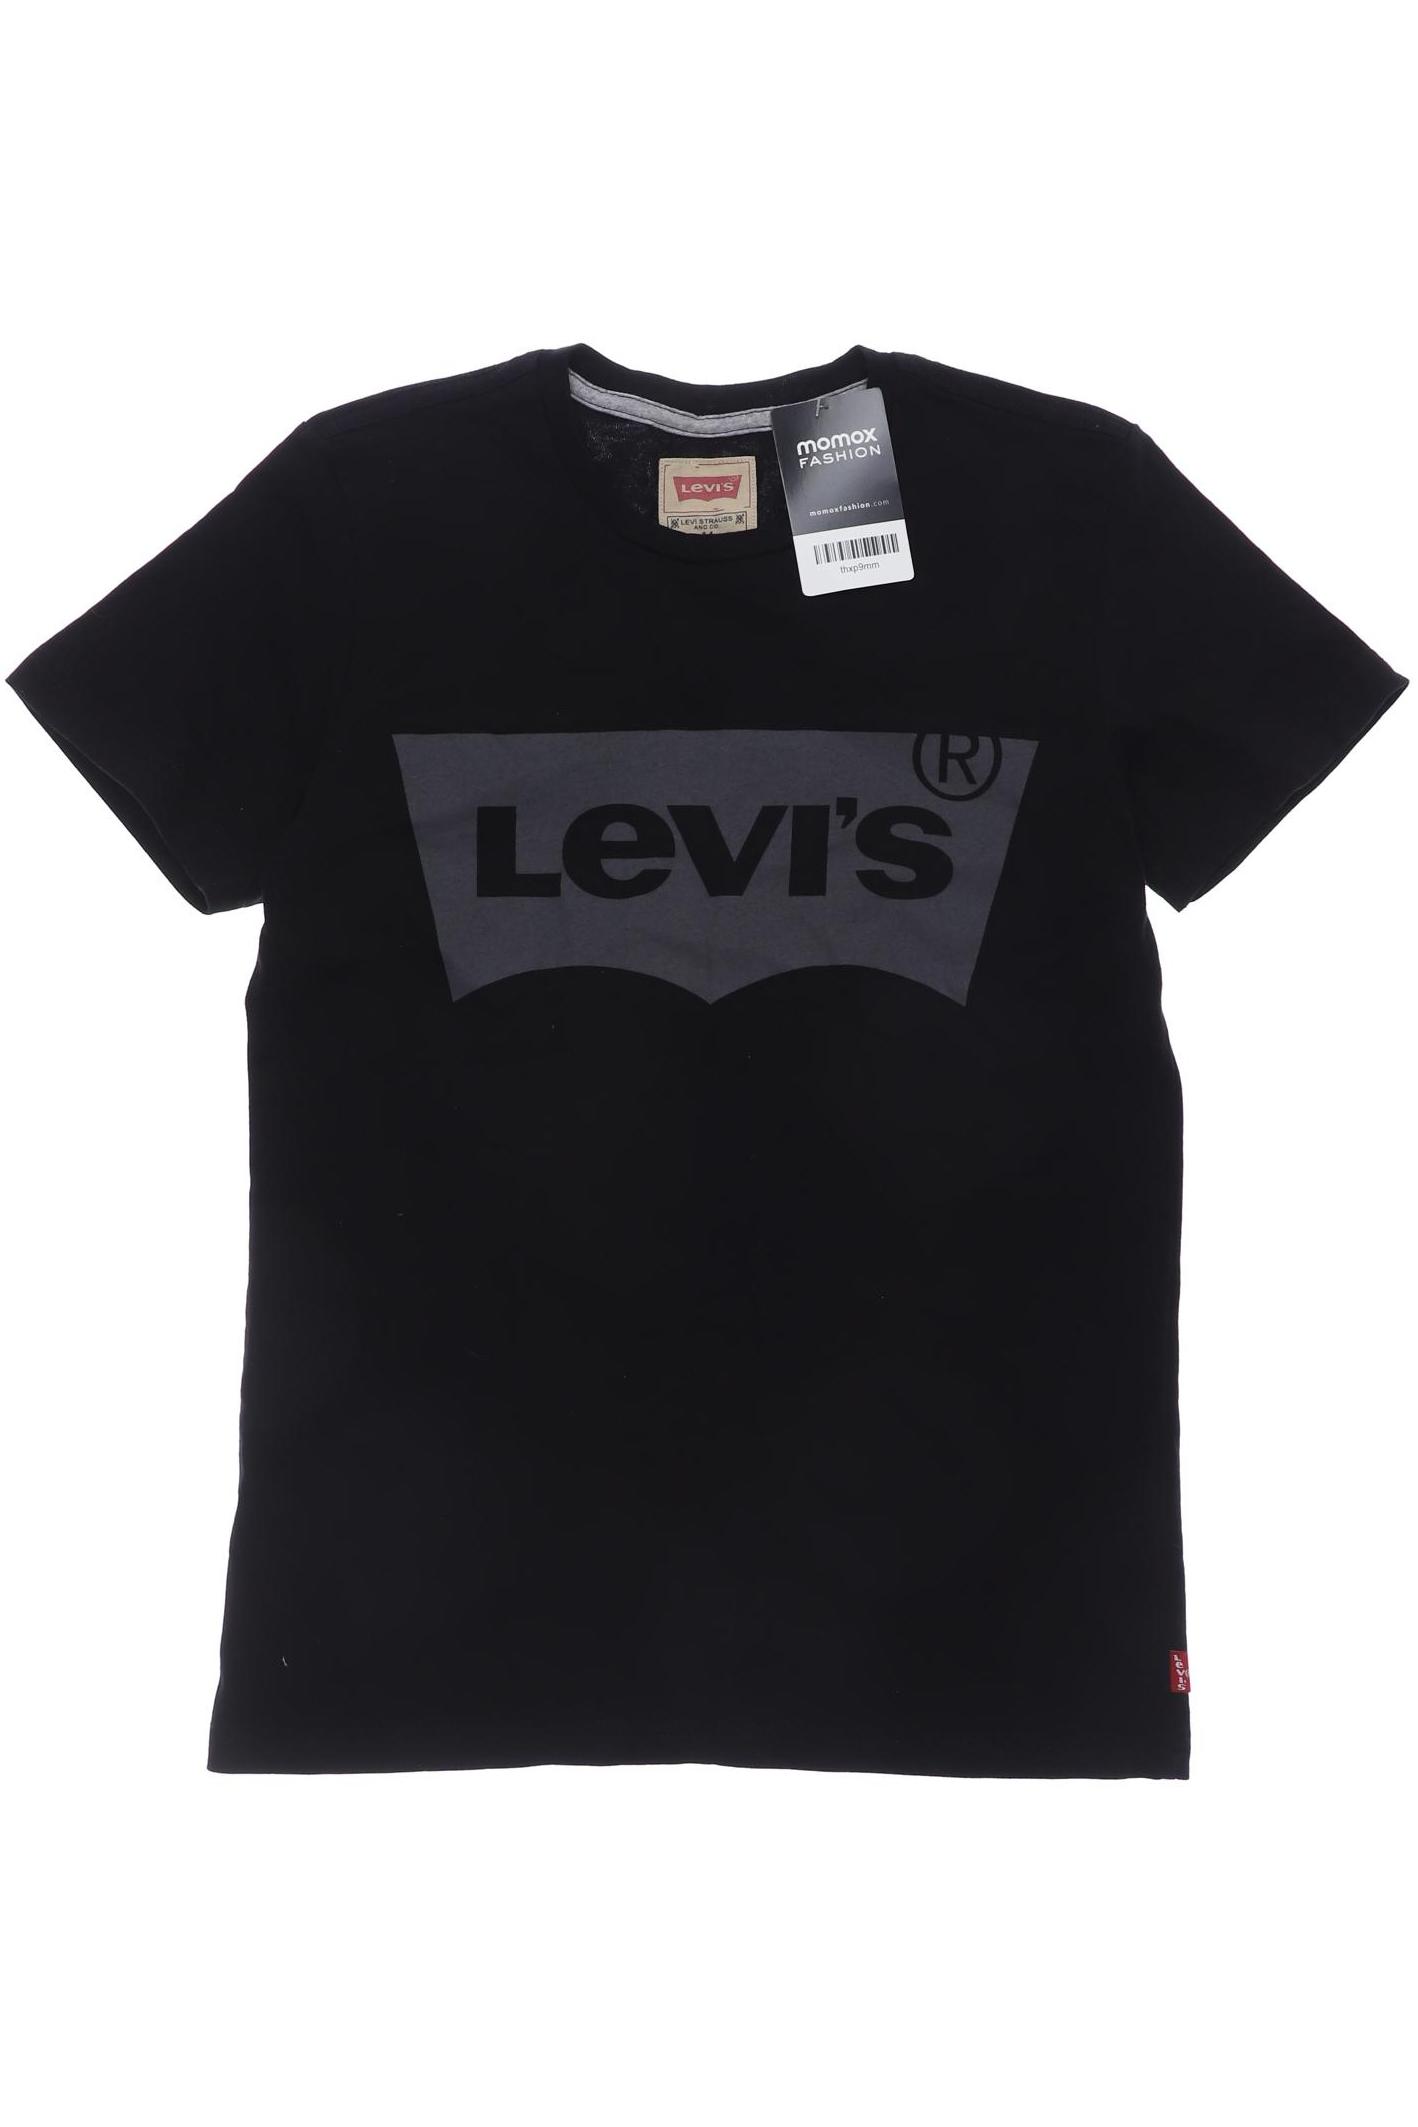 Levis Jungen T-Shirt, schwarz von Levis